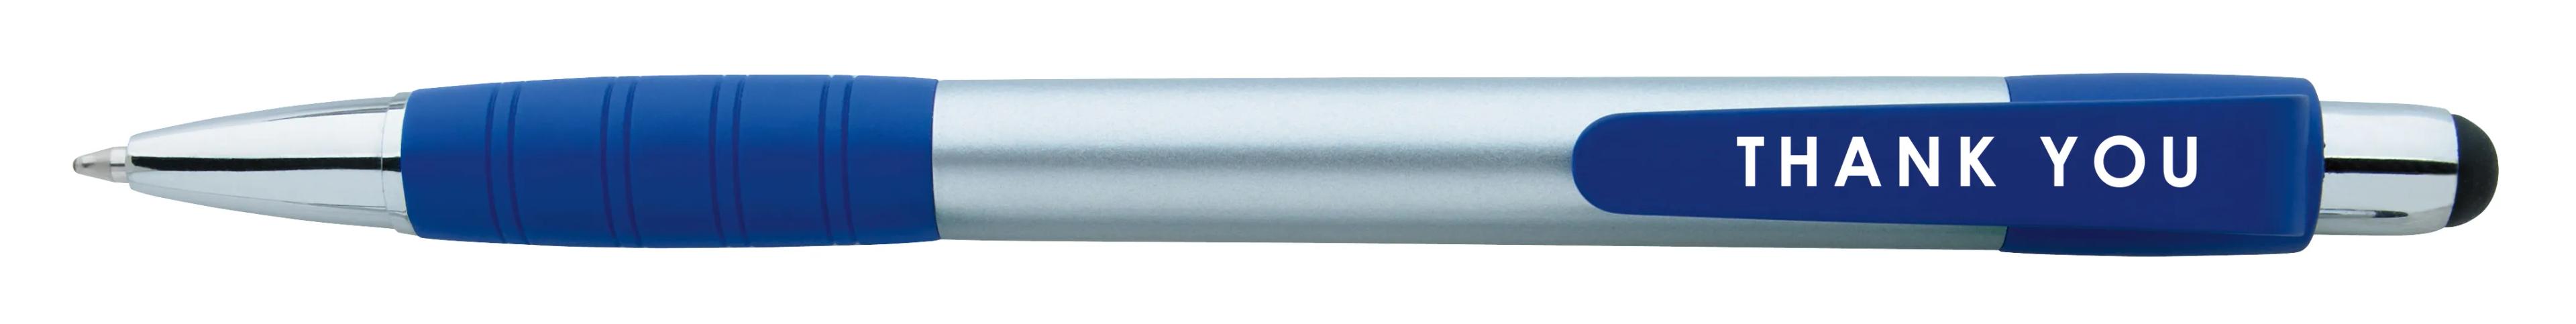 Silver Element Stylus Pen 31 of 53